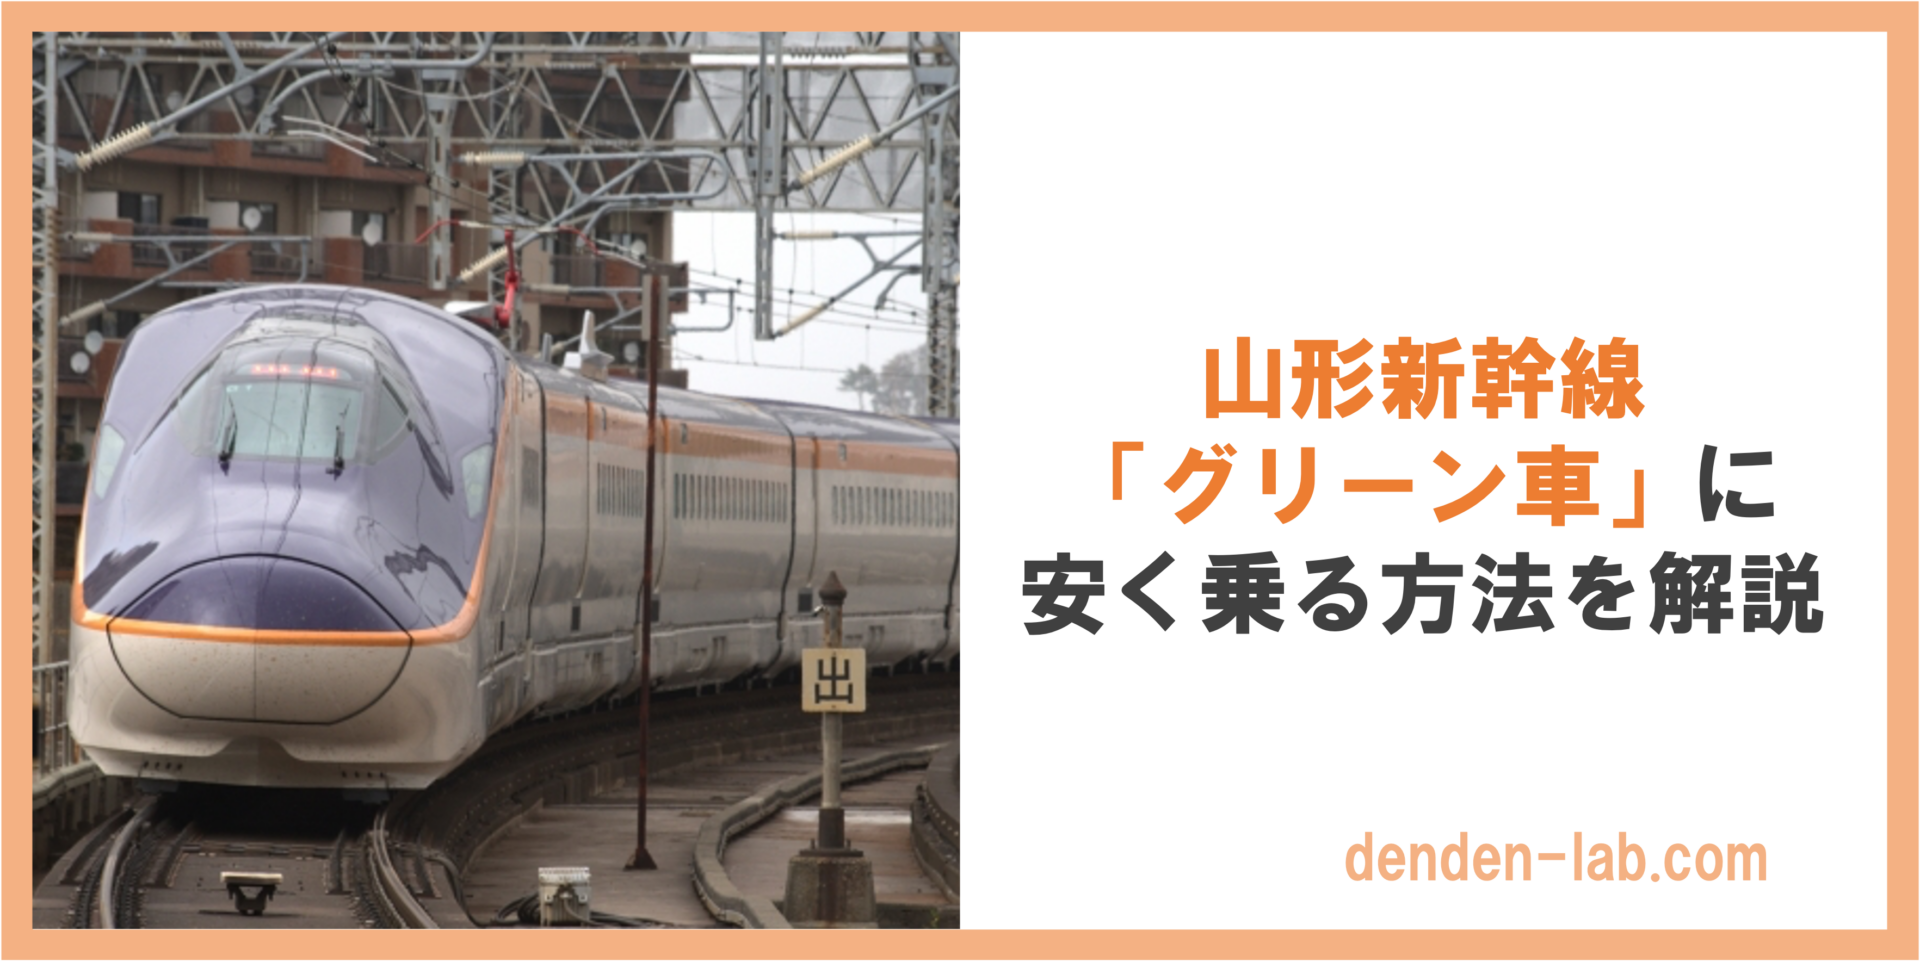 山形新幹線「グリーン車」に安く乗る方法を解説